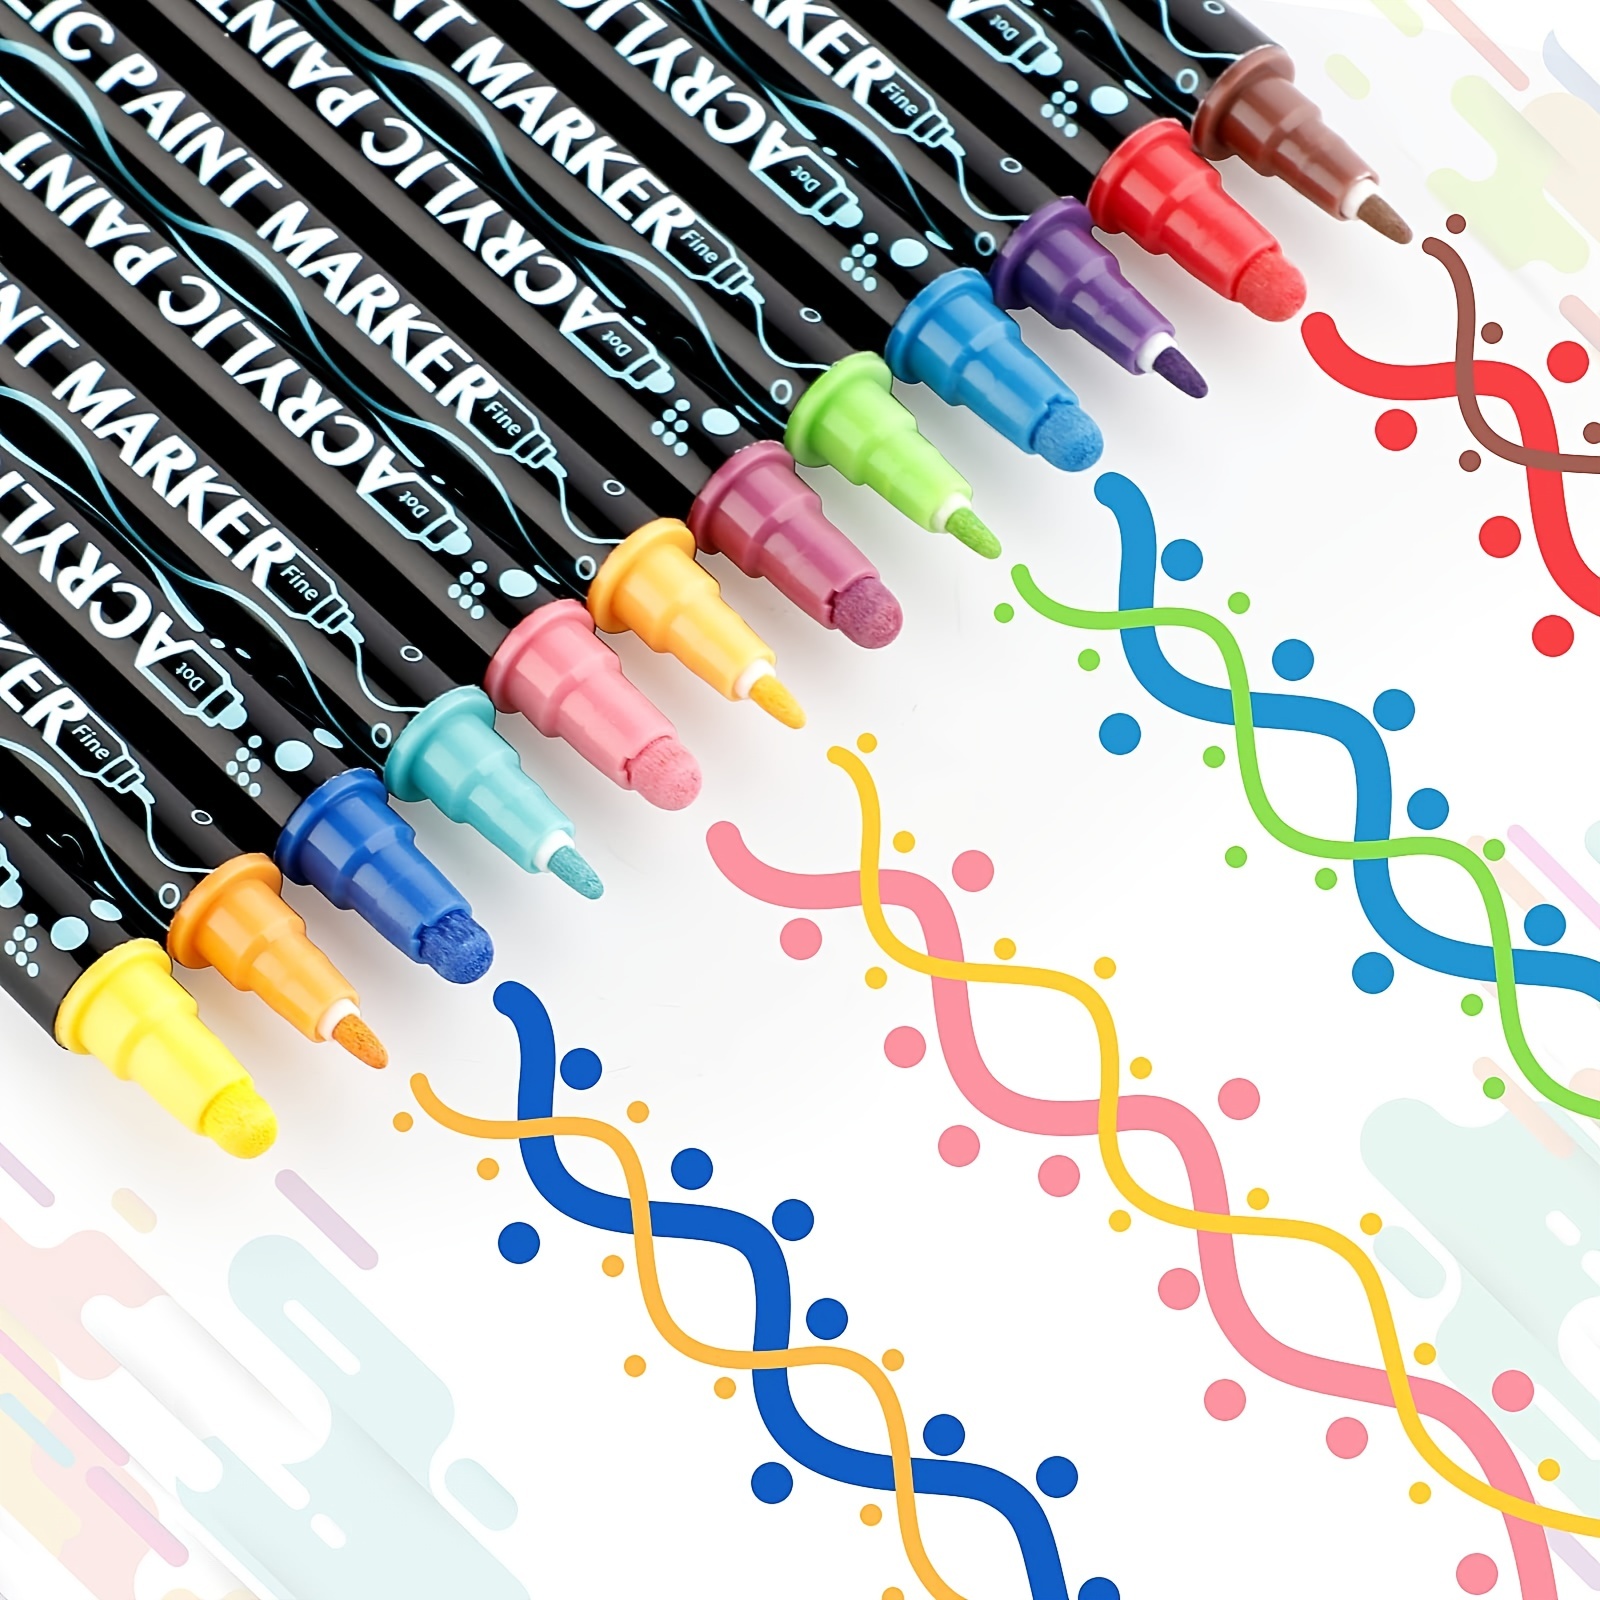 12 Colour Acrylic Paint Pens (Fine Tip) for rock painting, shoes